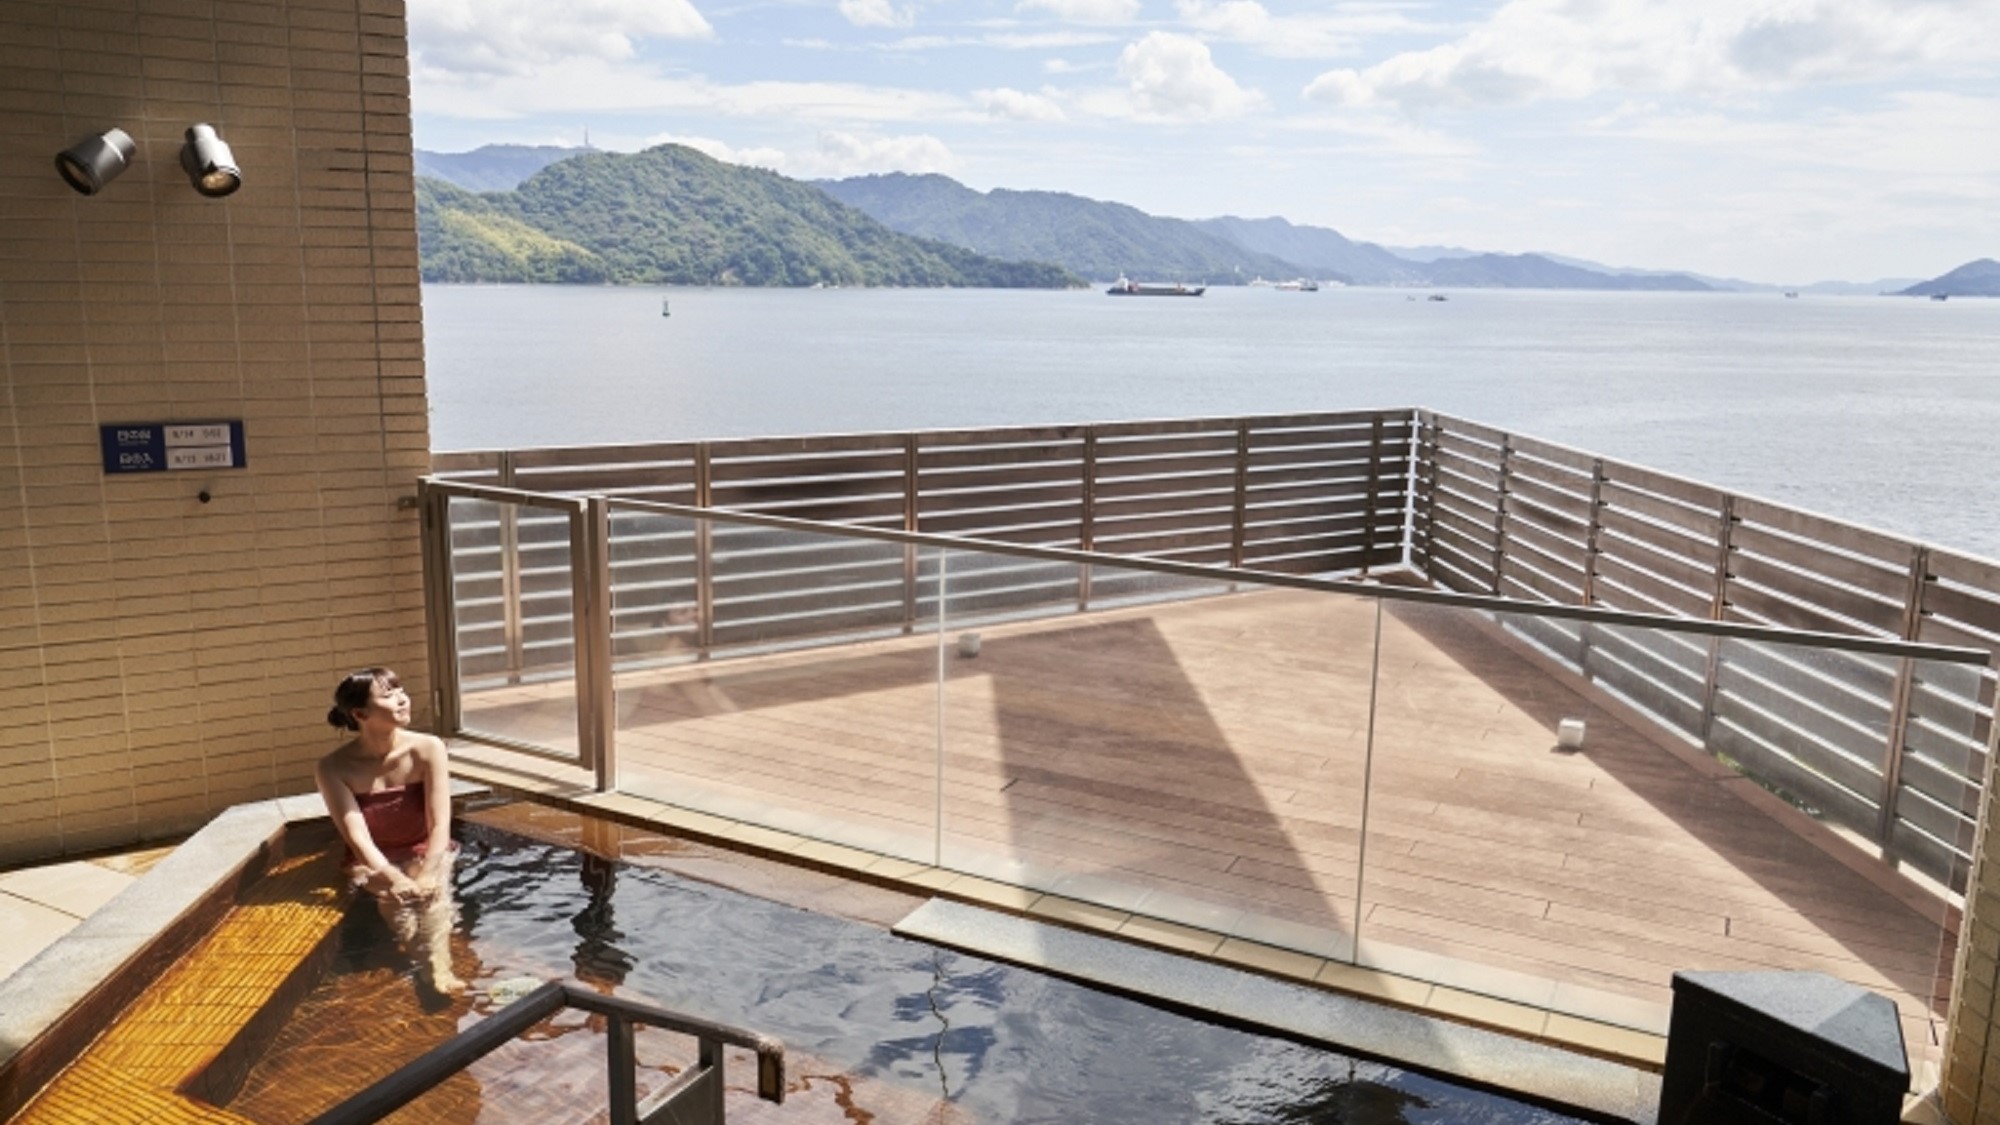 展望露天風呂 広島温泉「瀬戸の湯」穏やかな瀬戸内海を眺めながら、ゆったりとお楽しみください。